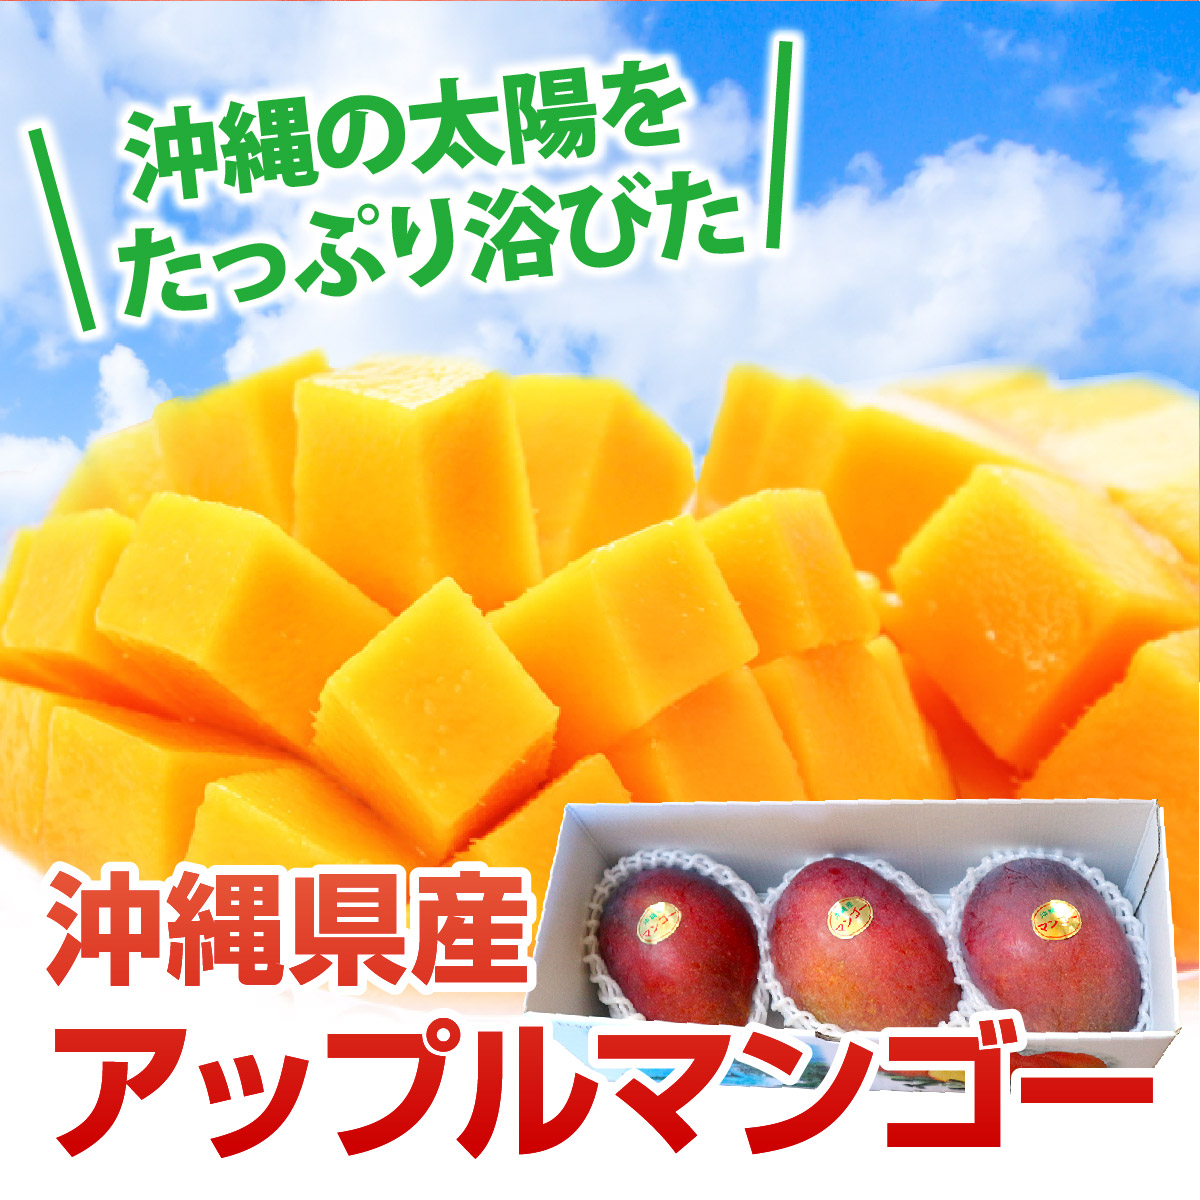 沖縄産アップルマンゴー。